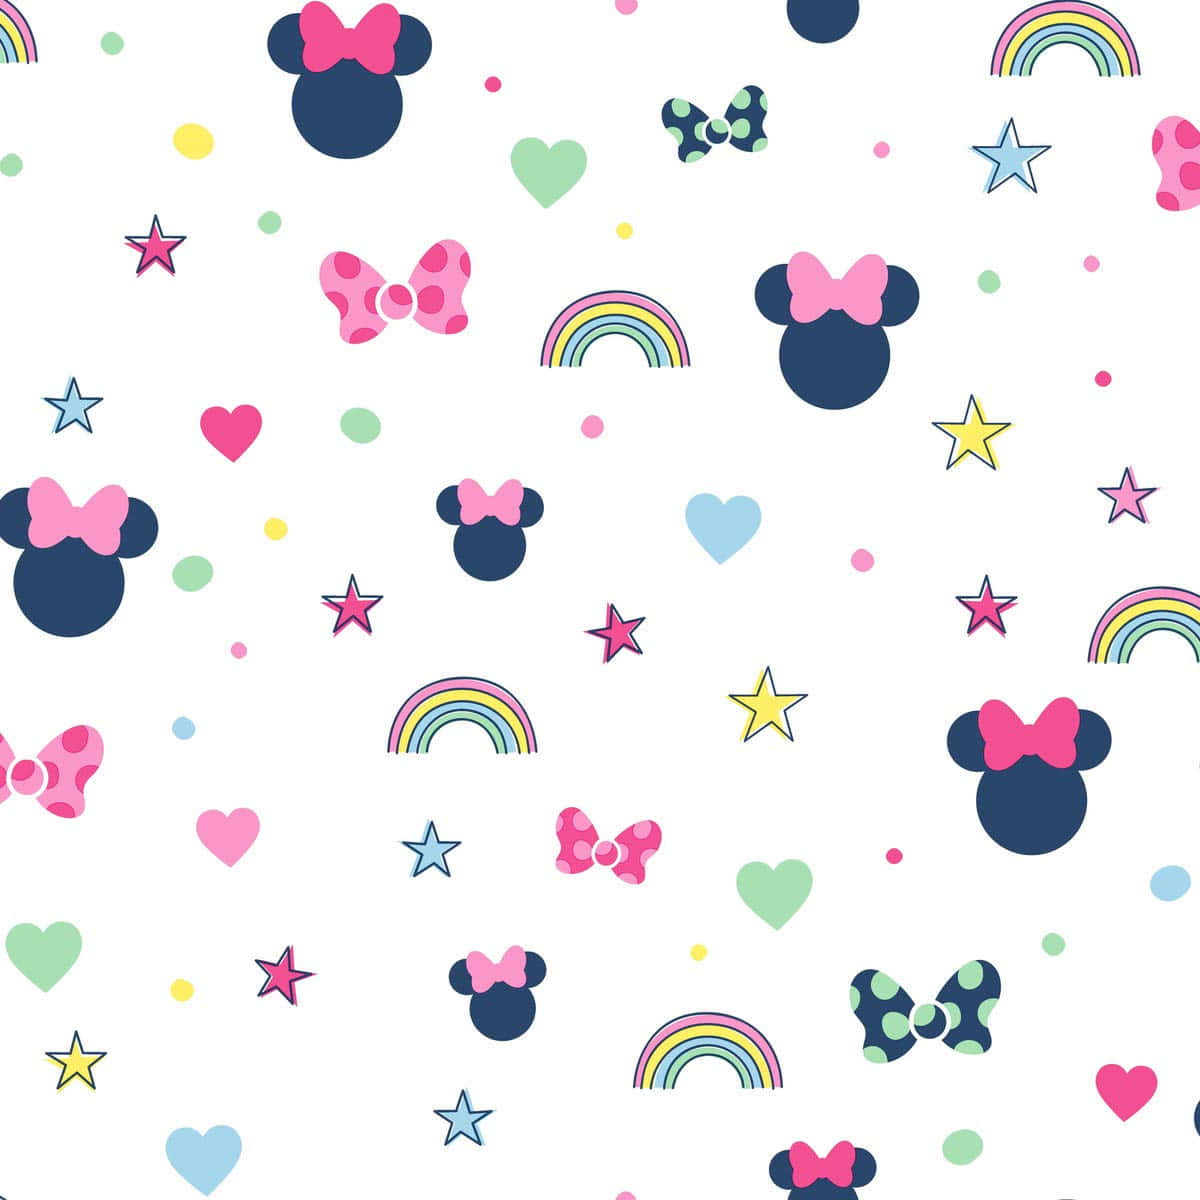 Rendiogni Giorno Magico Con Minnie Mouse E Il Suo Caratteristico Colore Rosa! Sfondo